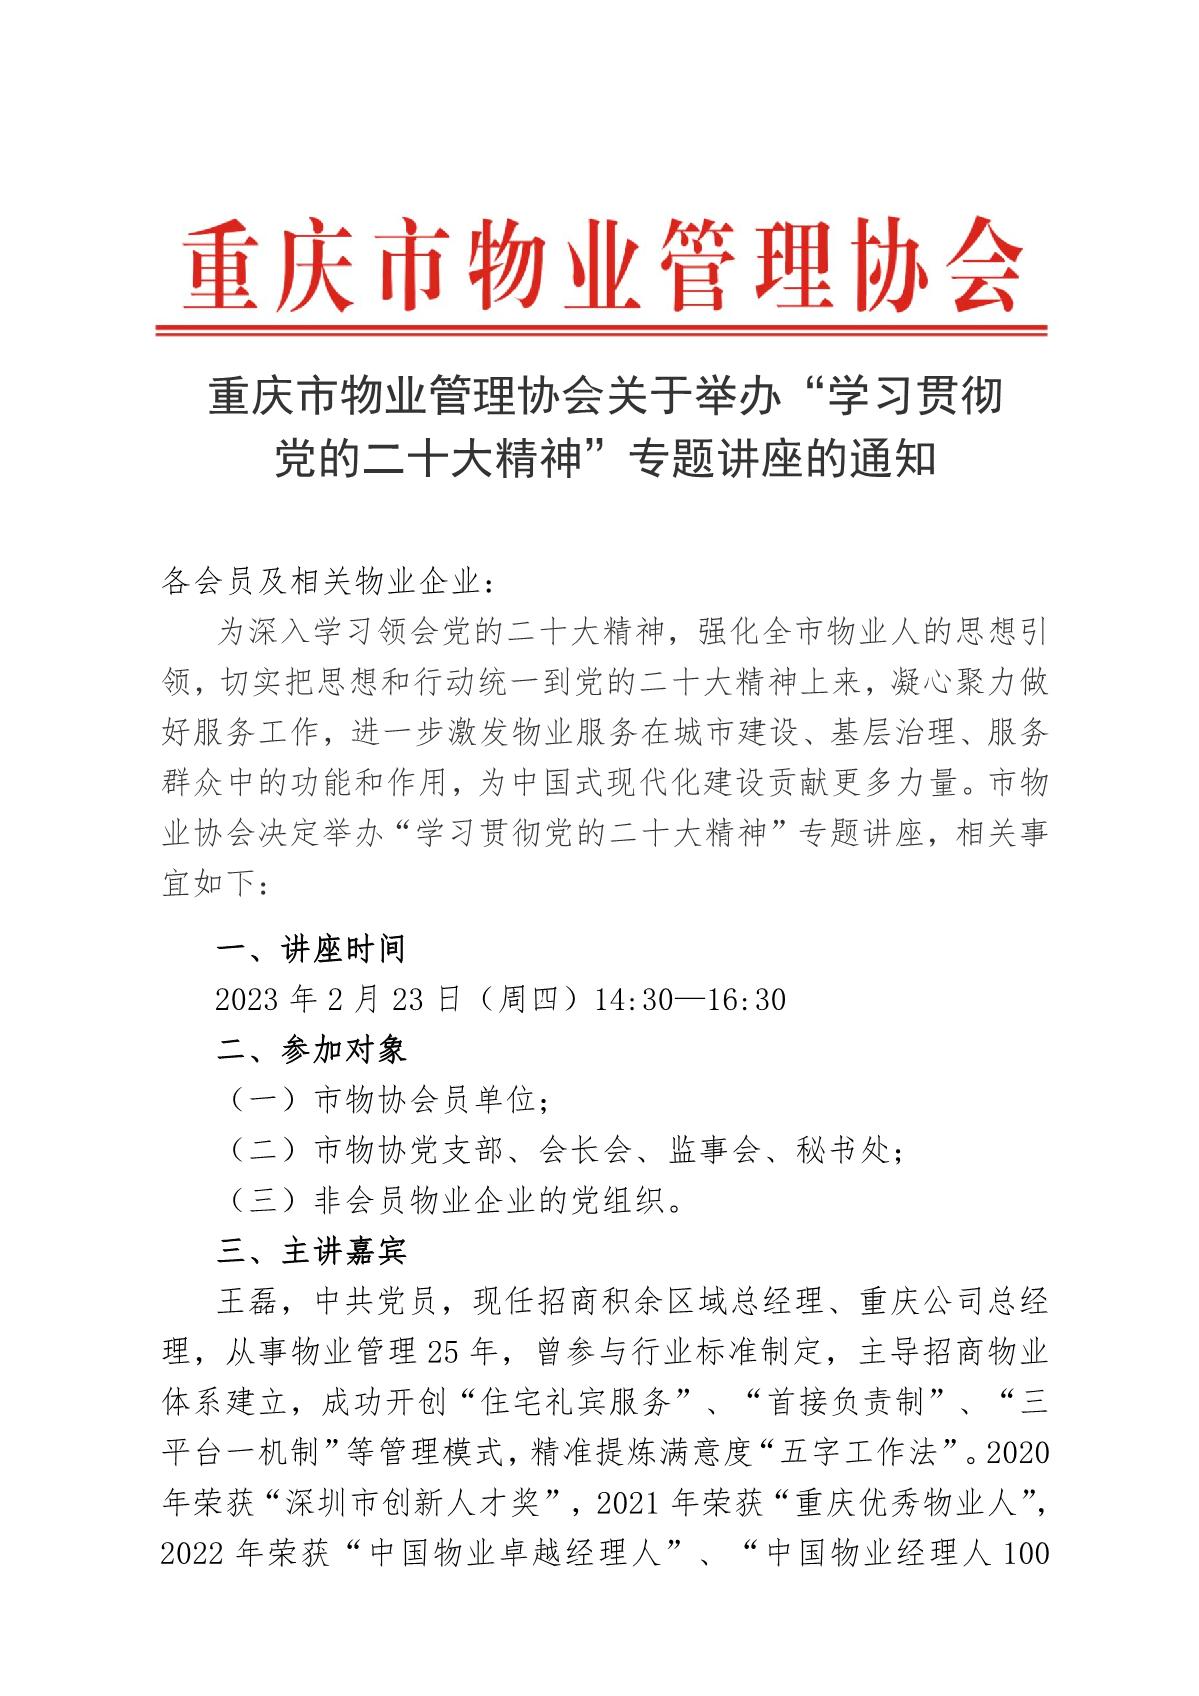 重庆市物业管理协会关于举办“学习贯彻党的二十大精神”专题讲座的通知_1.JPG